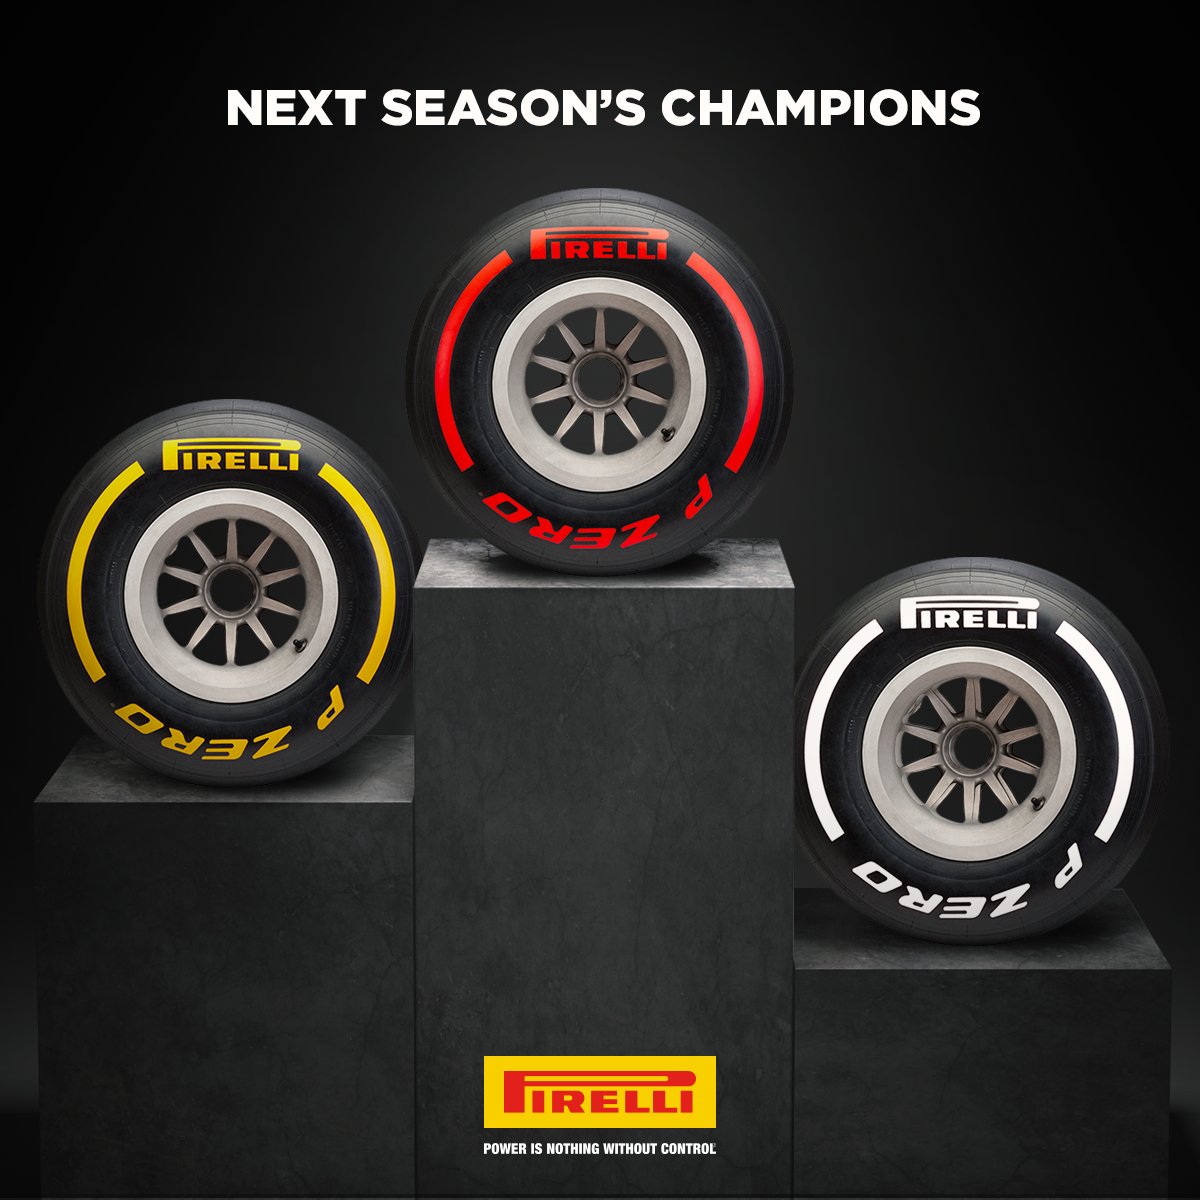 Pirelli simplifica identificación de los neumáticos para 2019